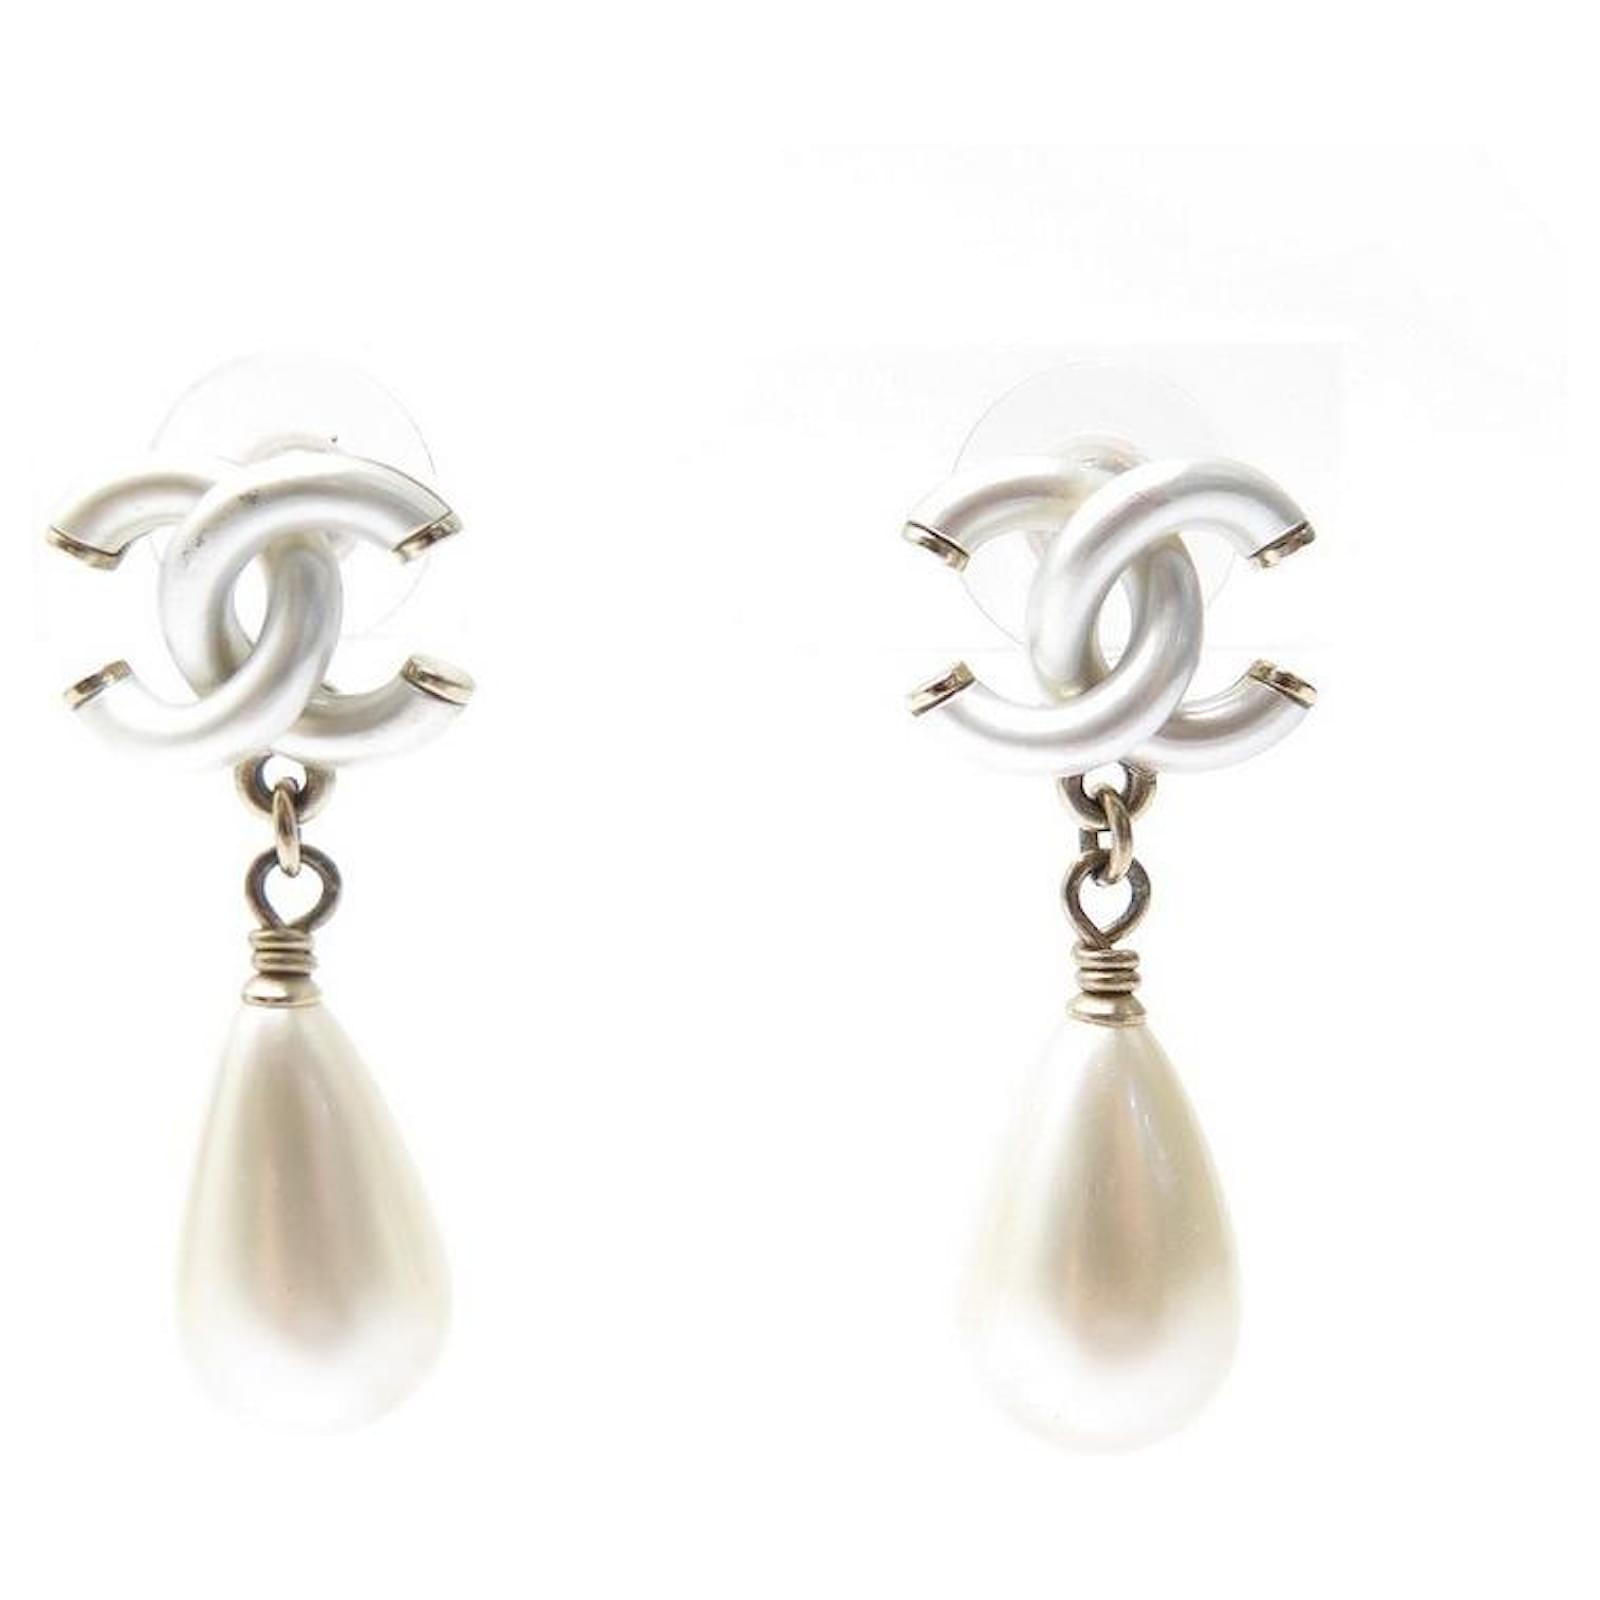 Boucles doreilles pendantes  Métal strass  perles dimitation doré  cristal  blanc nacré  Mode  CHANEL